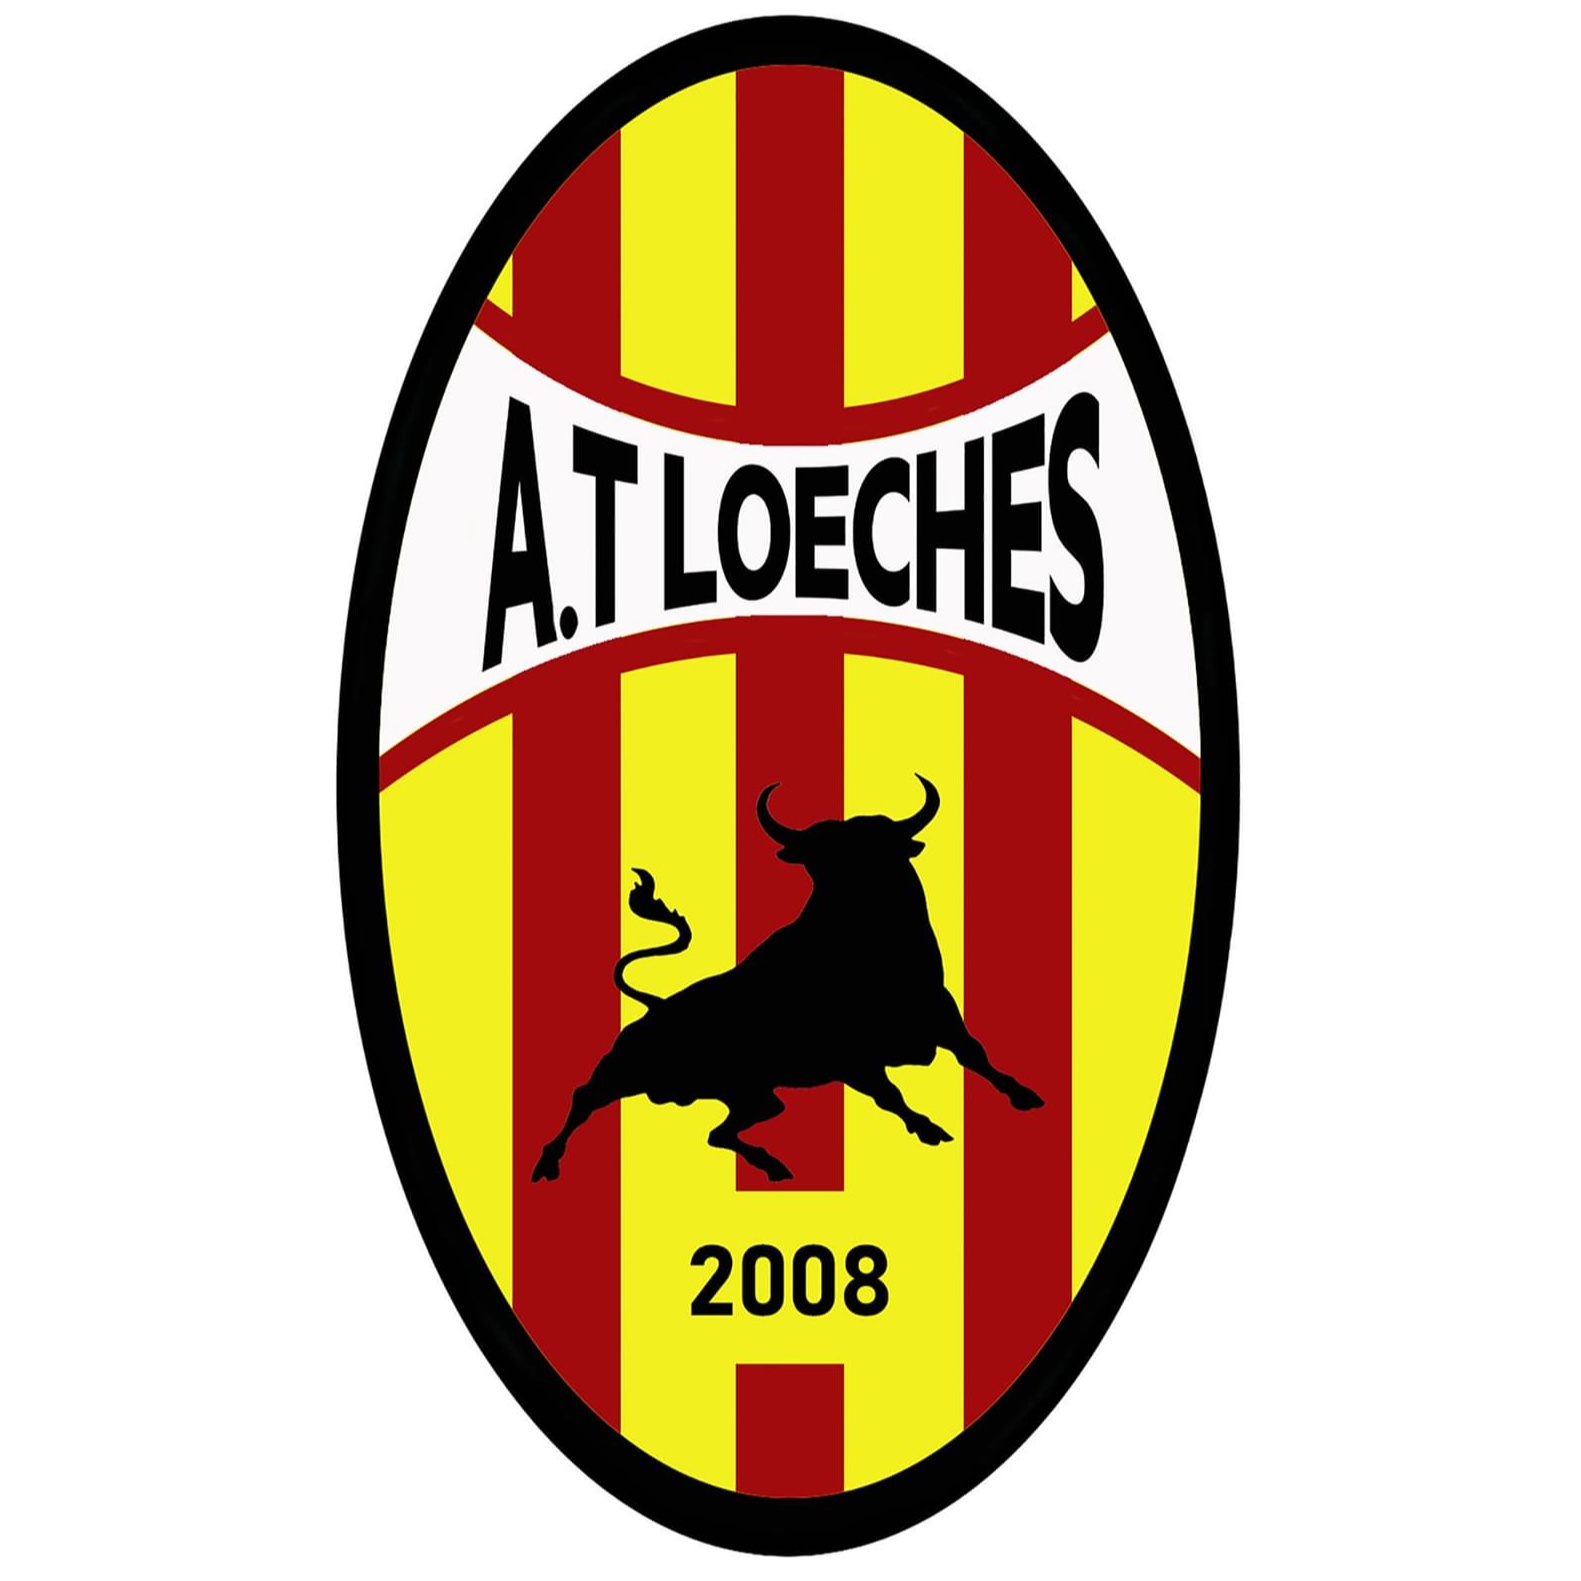 Atlético Loeches